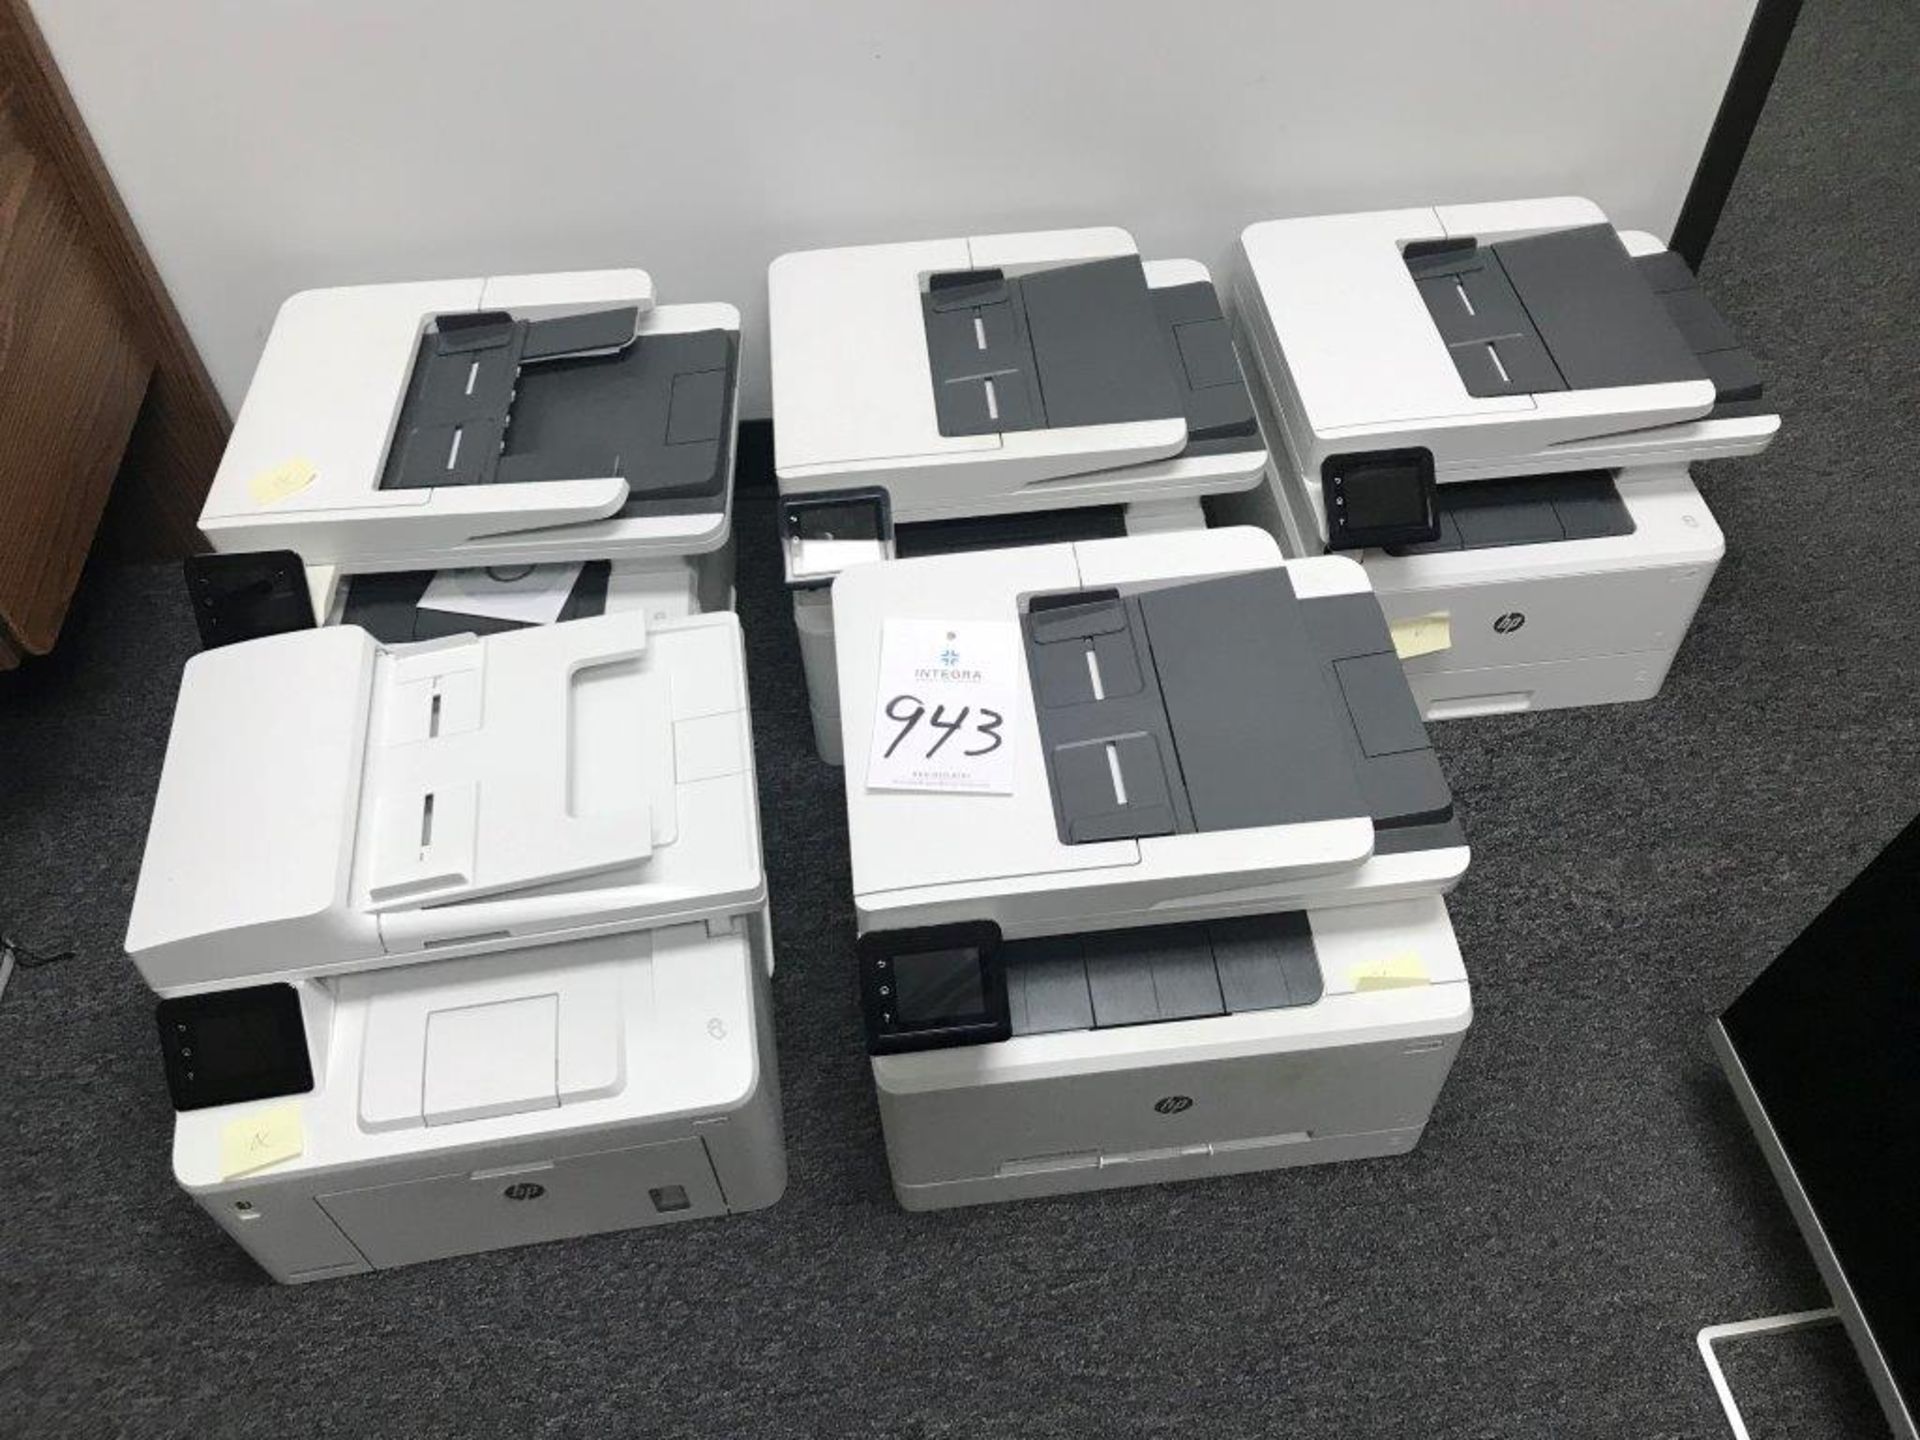 (5) Hewlett Packard Laser Jet Printers